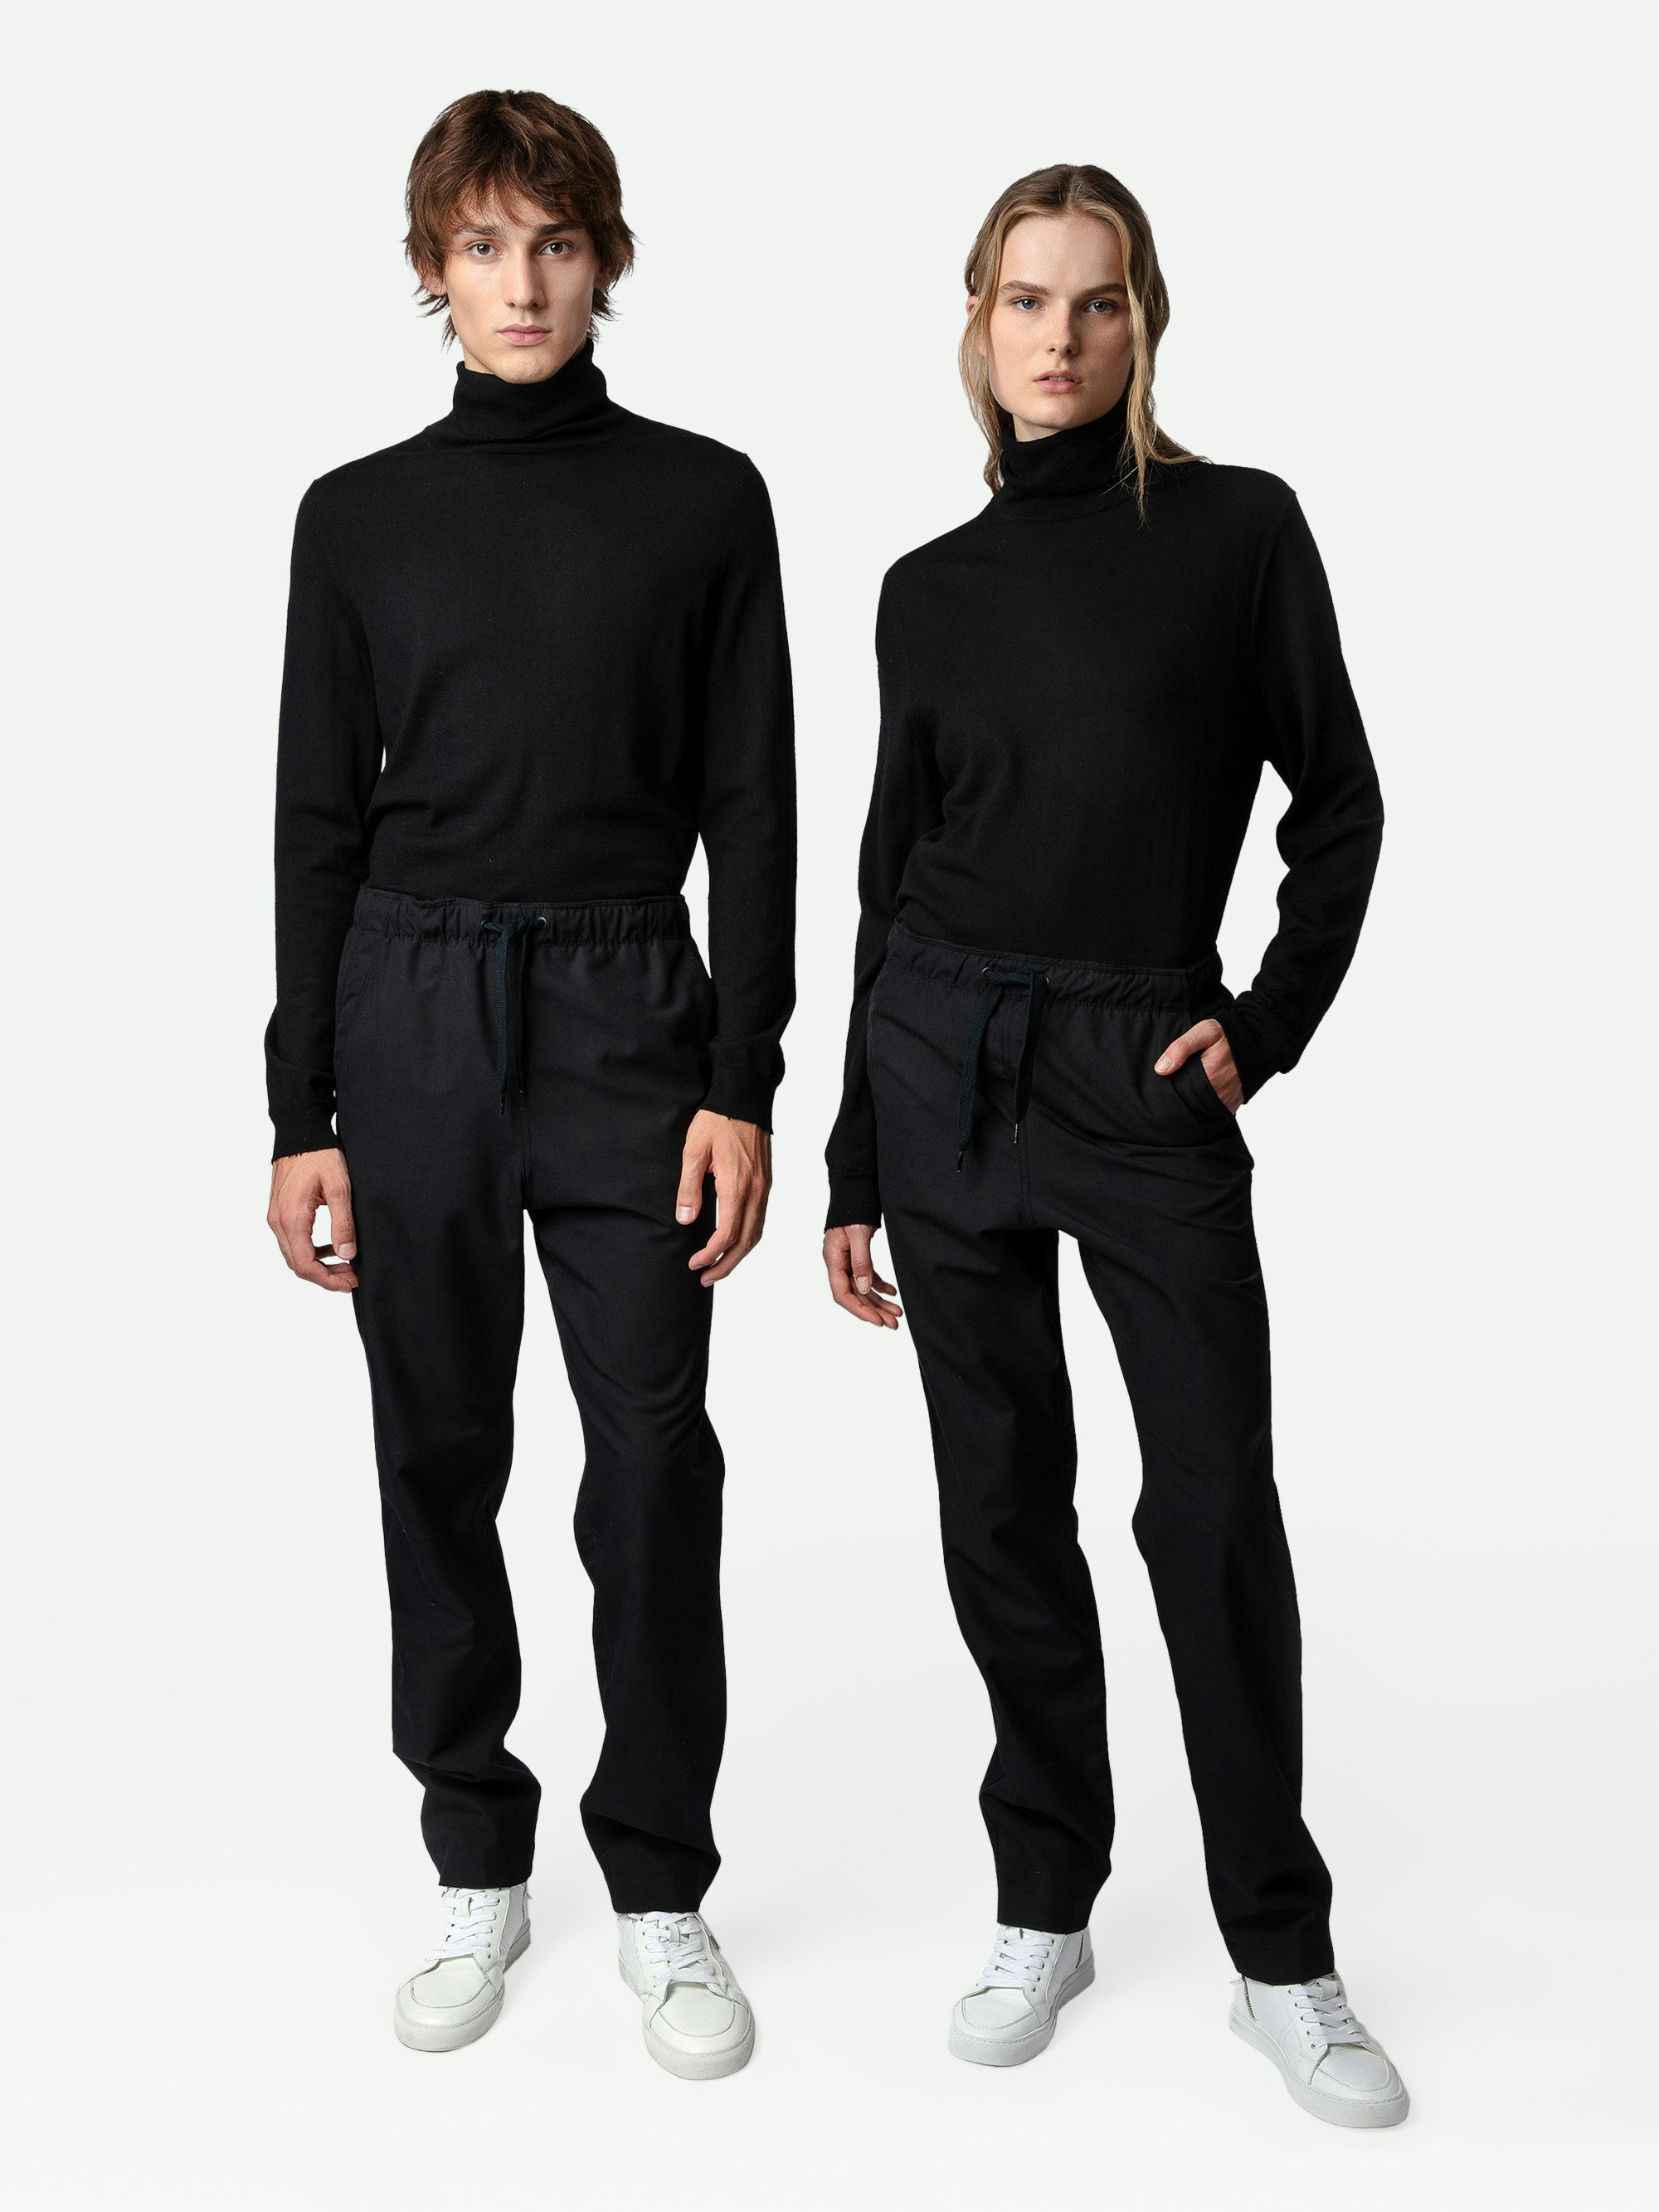 Pantalón Pixel - Pantalón unisex de lana en color negro con insignia del estudio en la espalda.